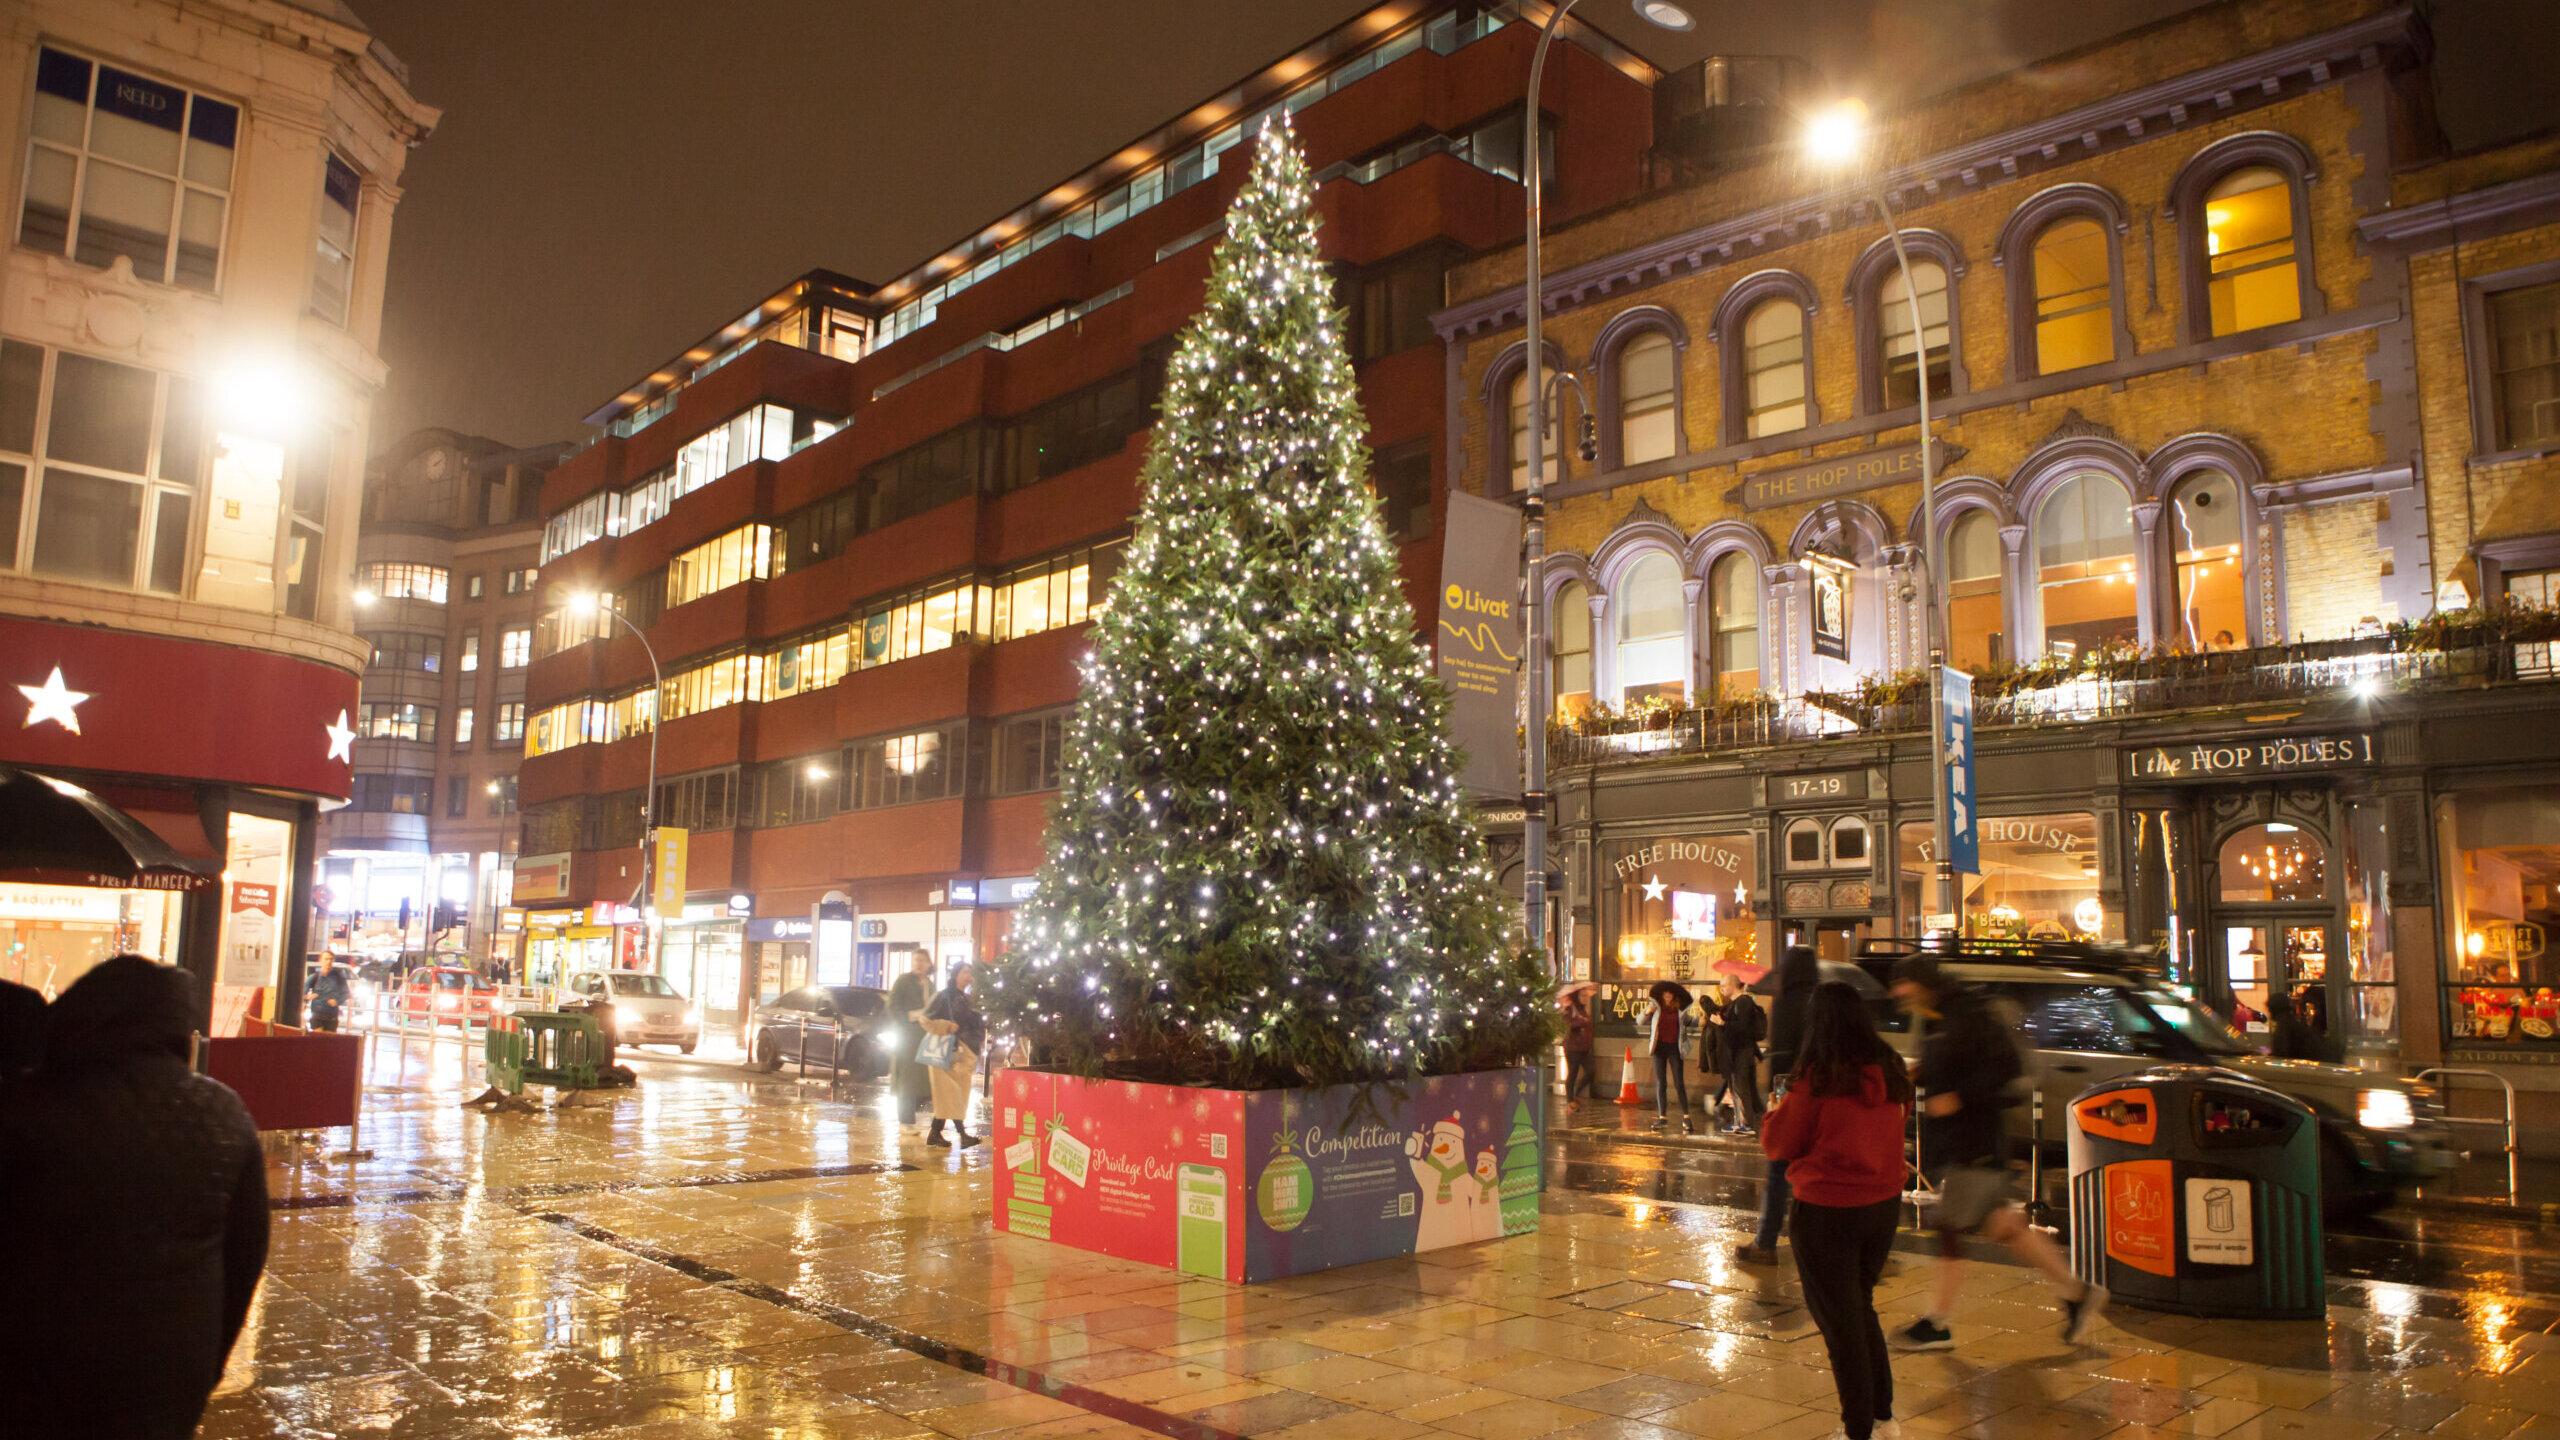 Christmas at Sook Hammersmith 